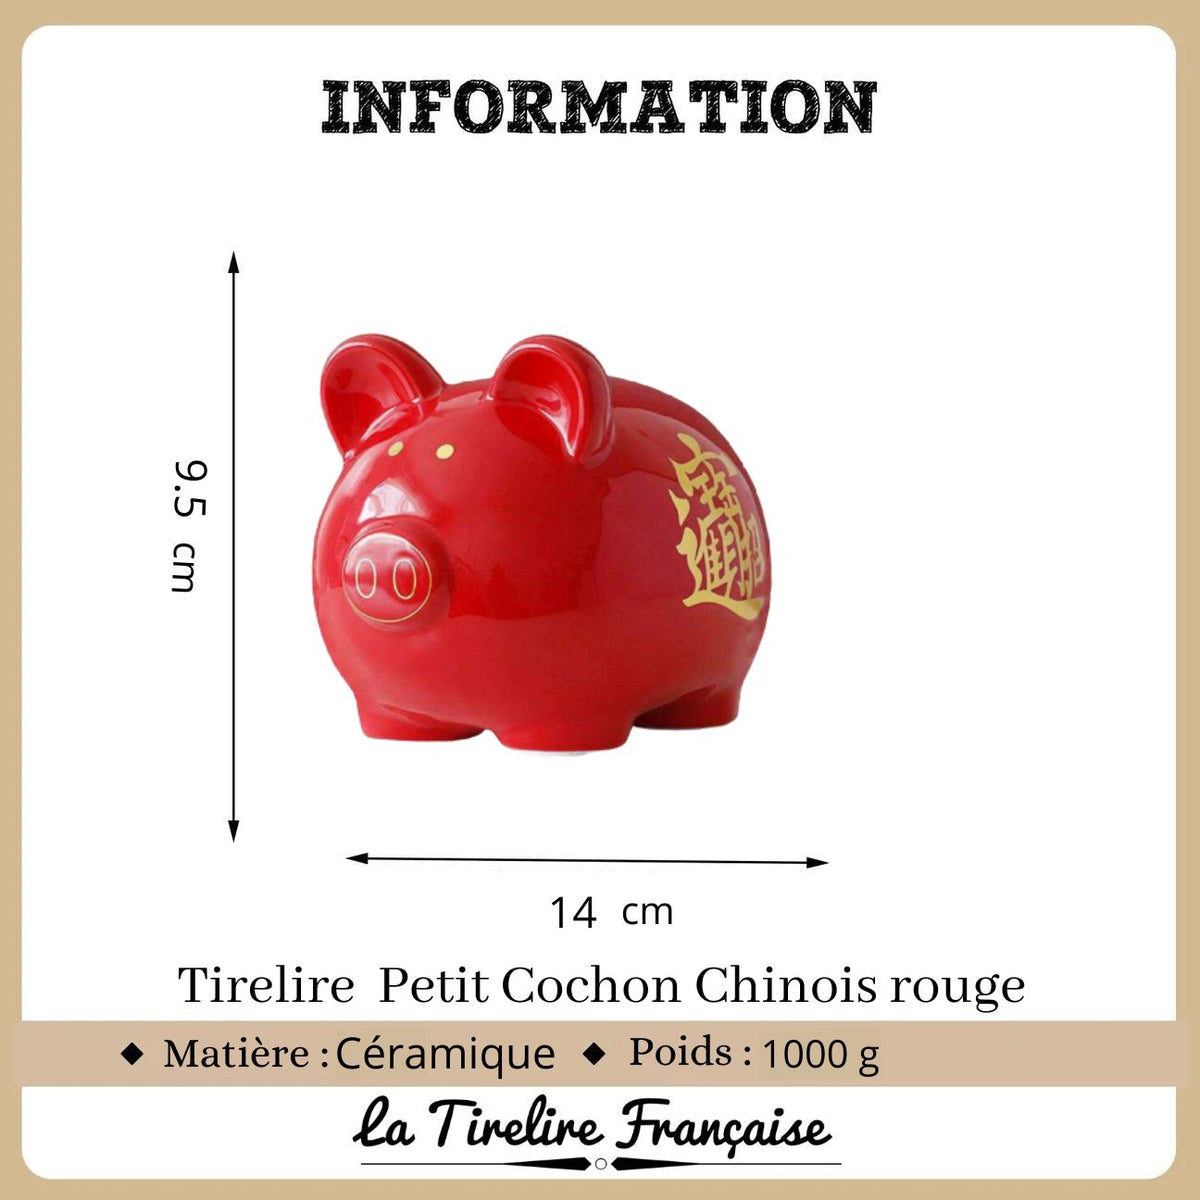 Tirelire Cochon Chinois Rouge, La Tirelire Française